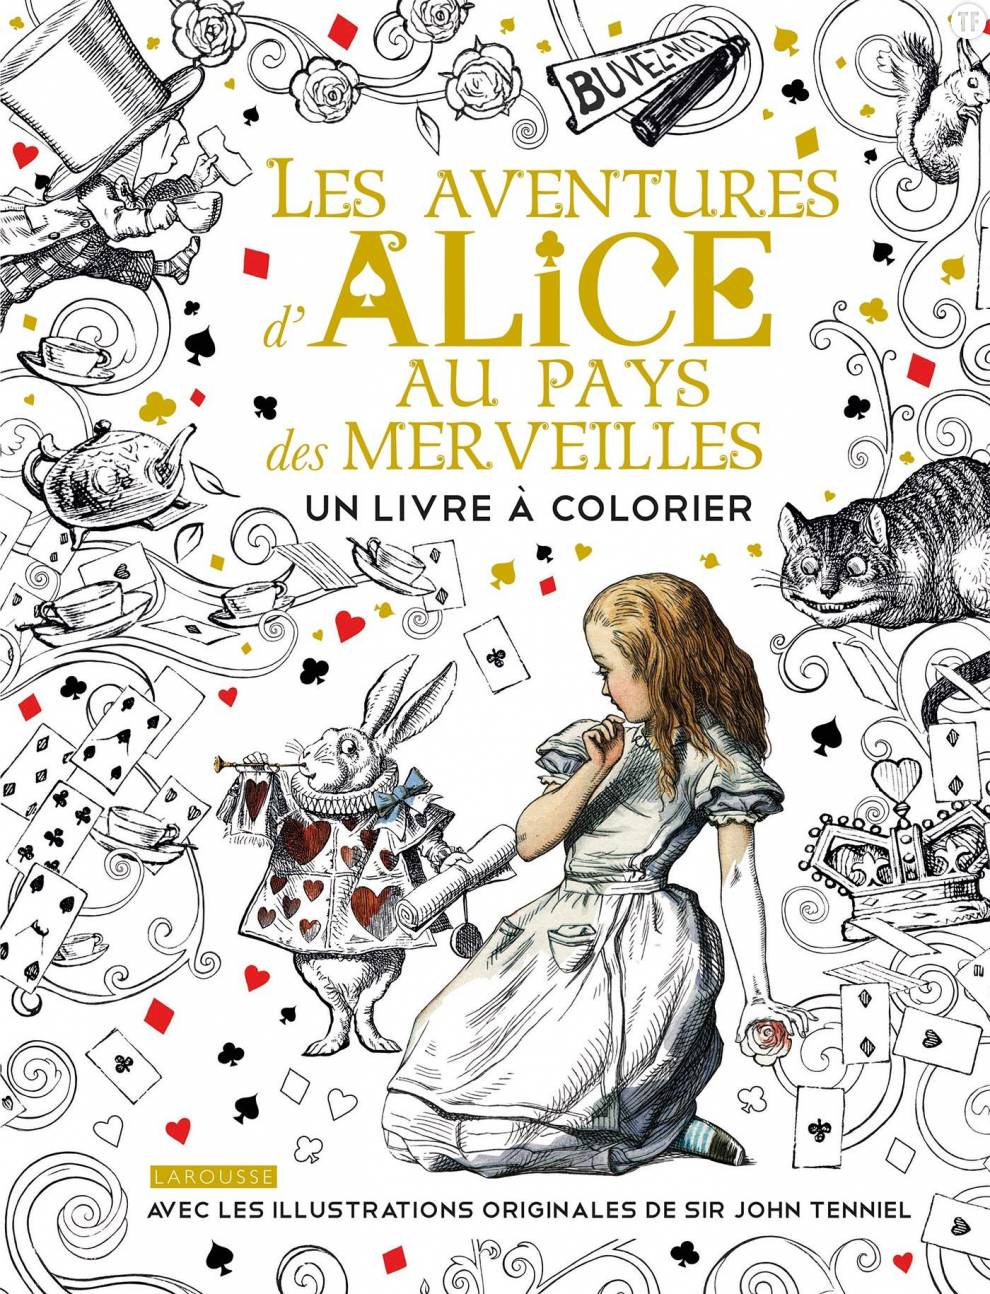   Livre à colorier, Larousse pratique éditions, 9,95€   